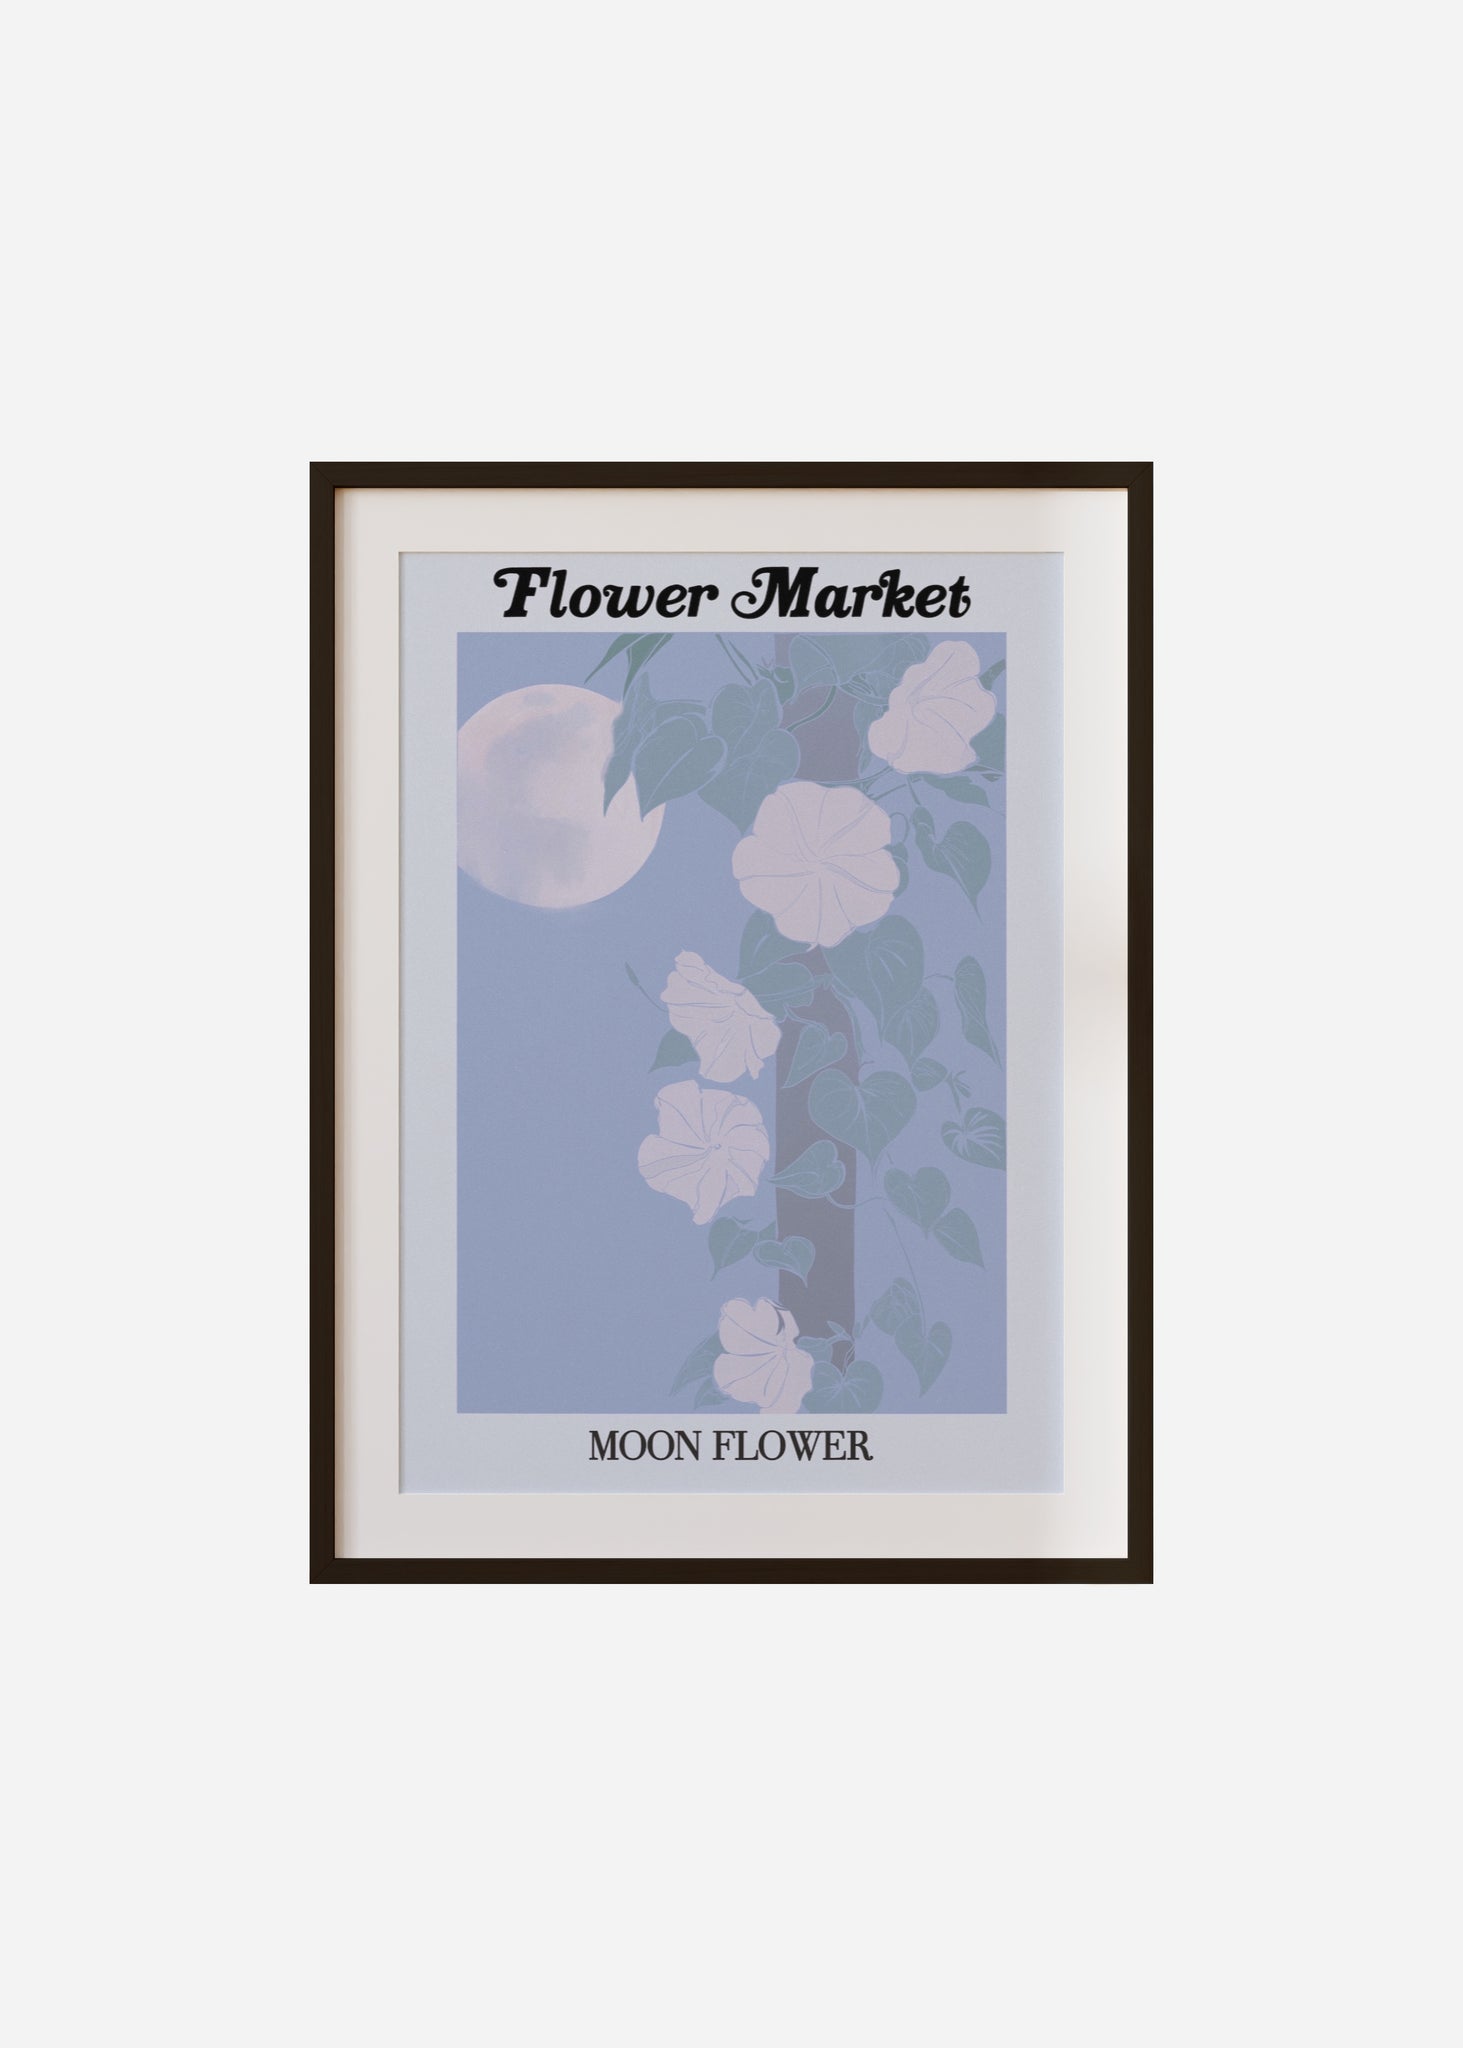 flower market / moon flower Framed & Mounted Print